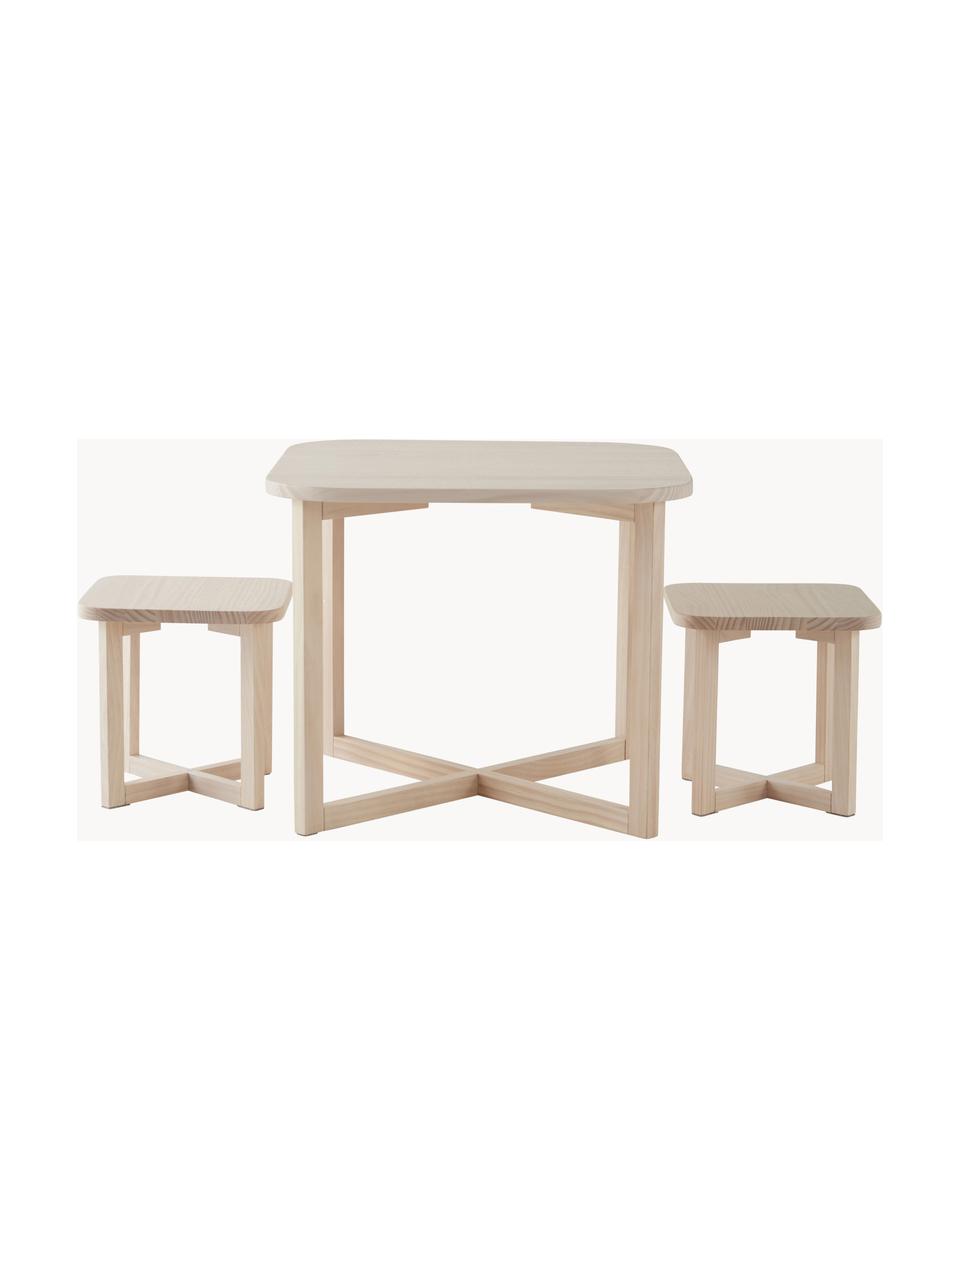 Kindertisch-Set Benny aus Holz, 3er-Set, FSC-zertifiziertes Kiefernholz, Kiefernholz, Set mit verschiedenen Größen